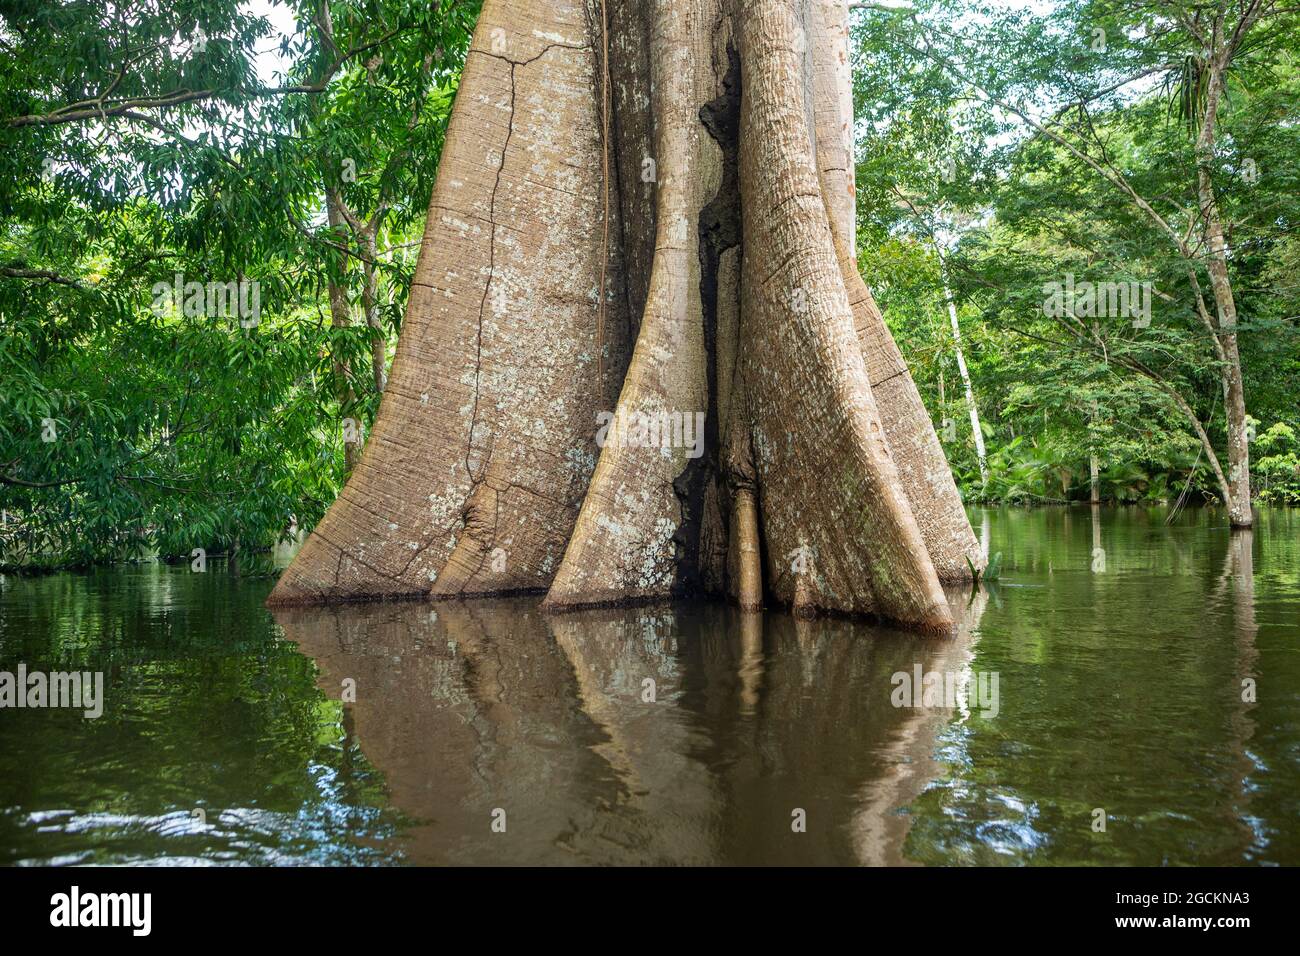 L'arbre géant Sumauma ou Kapok, Ceiba pentandra, au cours des eaux inondées de la rivière Amazonas dans la forêt amazonienne. Concept de biodiversité. Banque D'Images